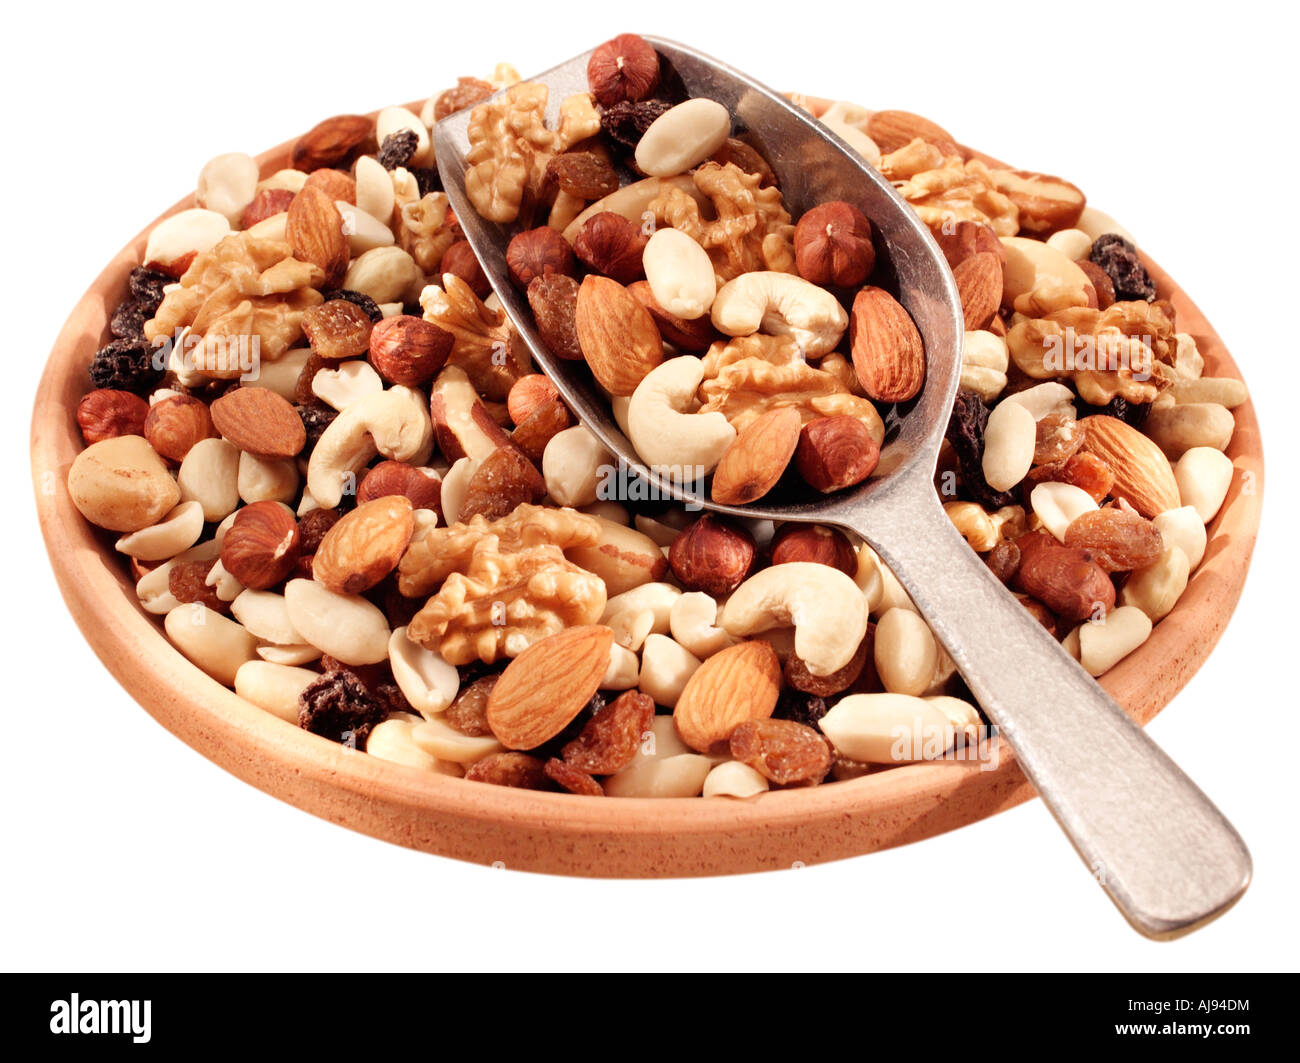 MIXED NUTS Stock Photo